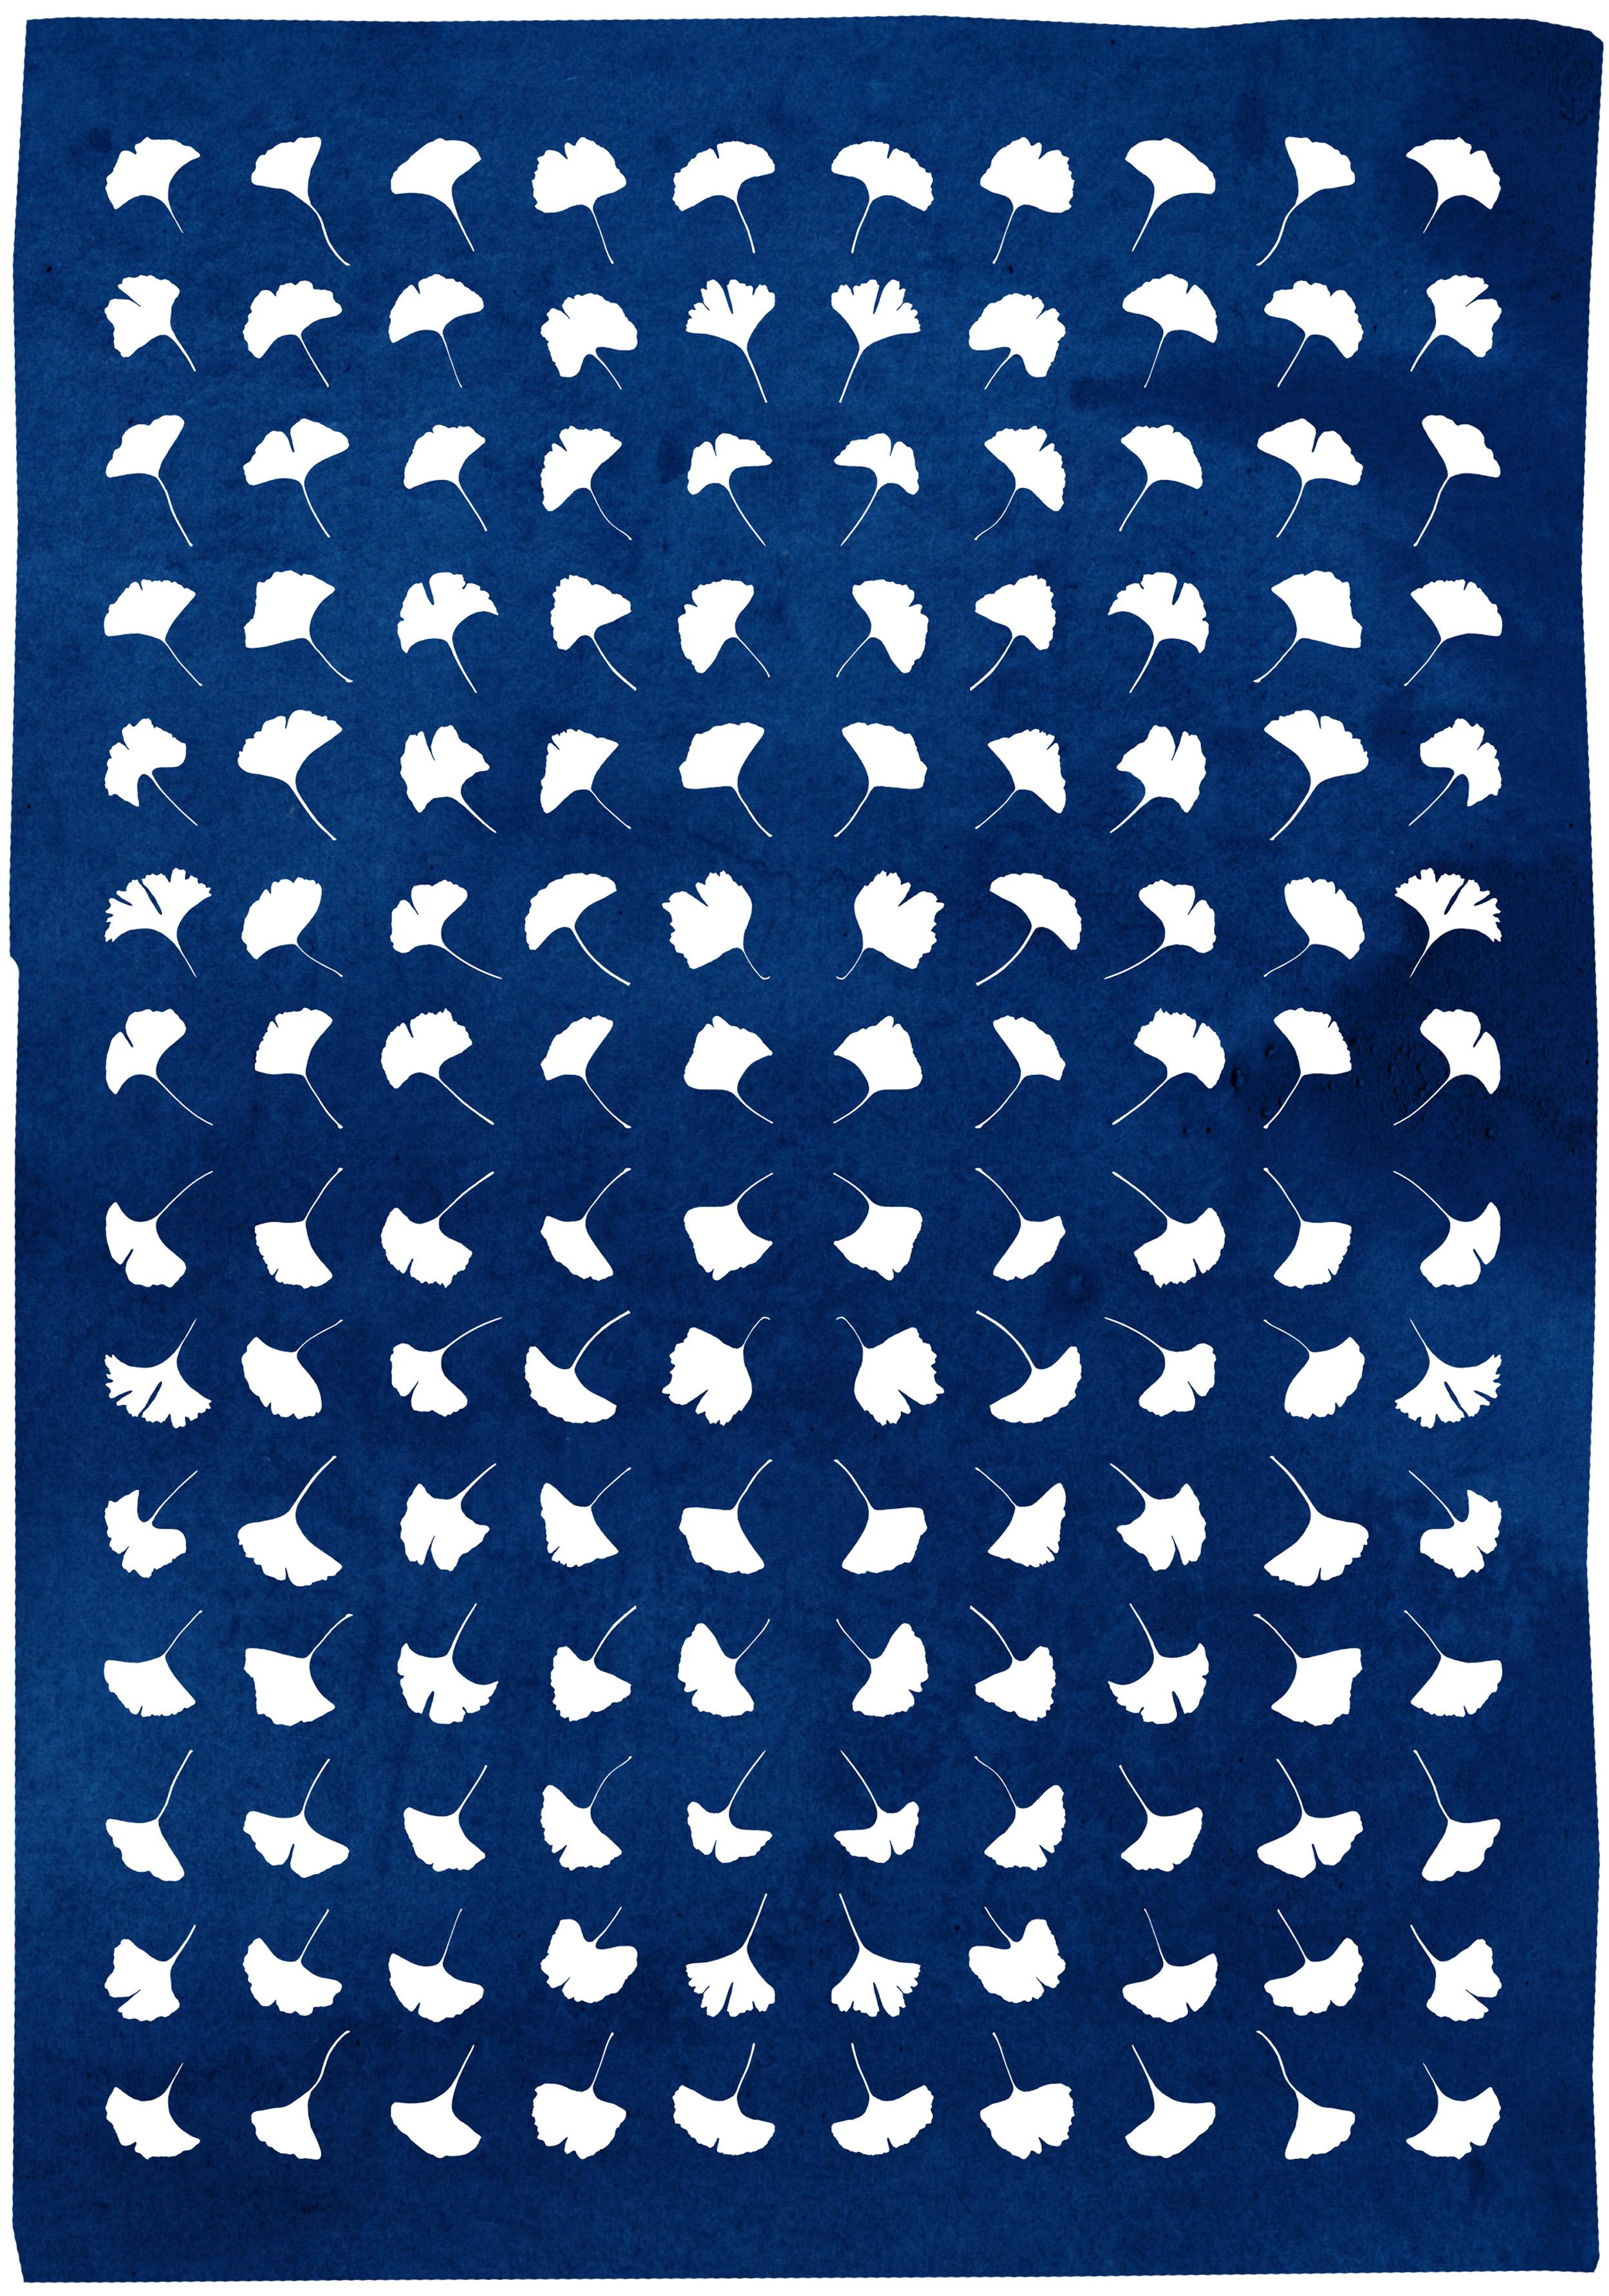 Kind of Cyan Still-Life Print – Gingko Blatt Explosion, gepresste Blumen, weißer und blauer handgefertigter botanischer Druck